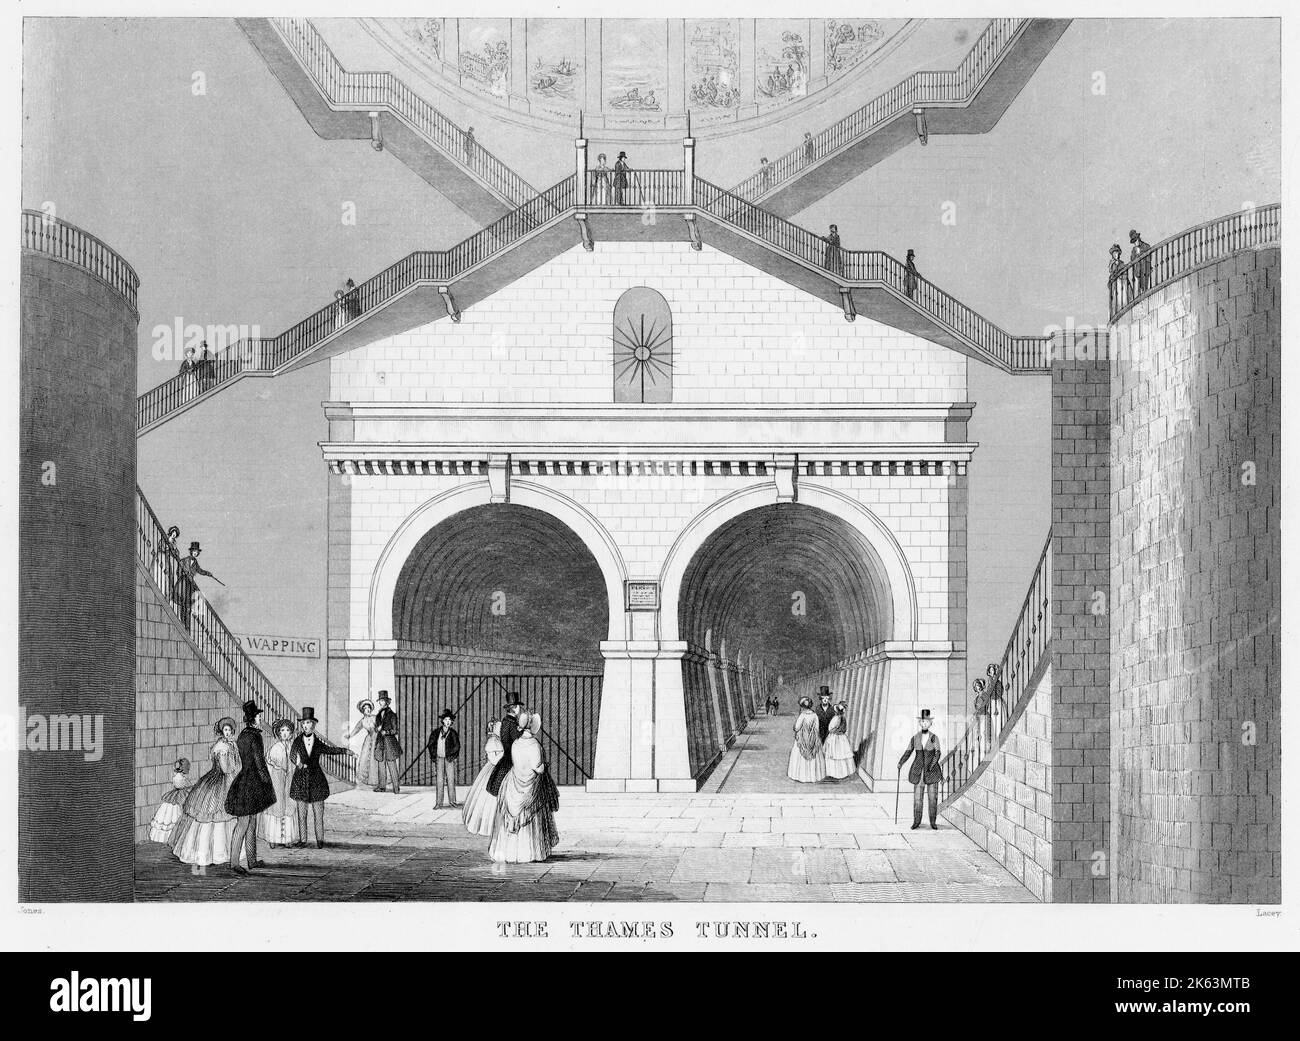 Blick auf den Eingang zum Wapping-Rotherhithe-Tunnel unter der Themse, dem ersten Unterwassertunnel der Welt, der 1843 von Marc Brunel fertiggestellt wurde. Der Tunnel wurde von 1843 bis 1865 von Fußgängern genutzt, bevor er für den Bahnverkehr umgebaut wurde. Stockfoto